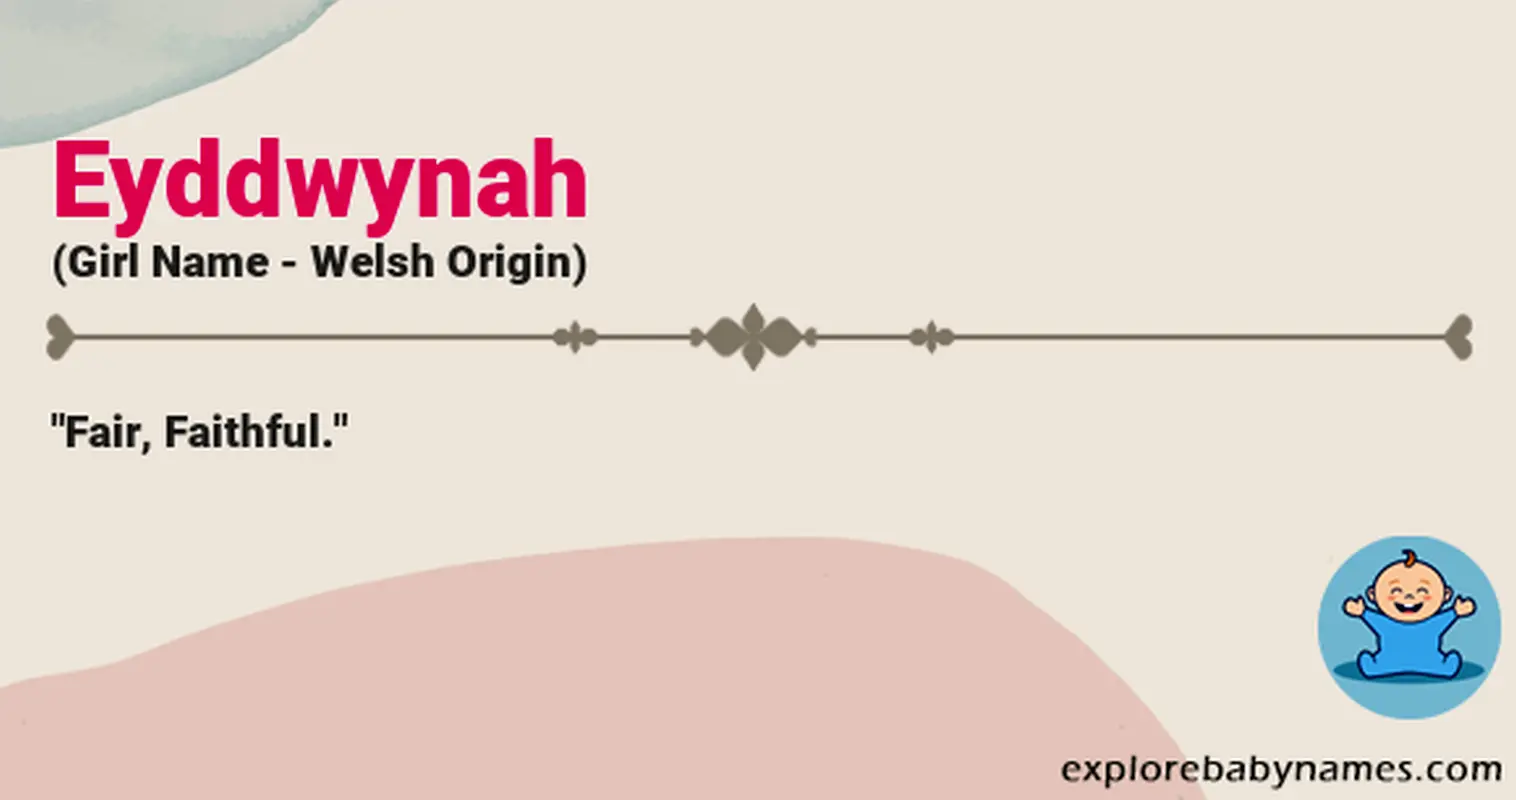 Meaning of Eyddwynah